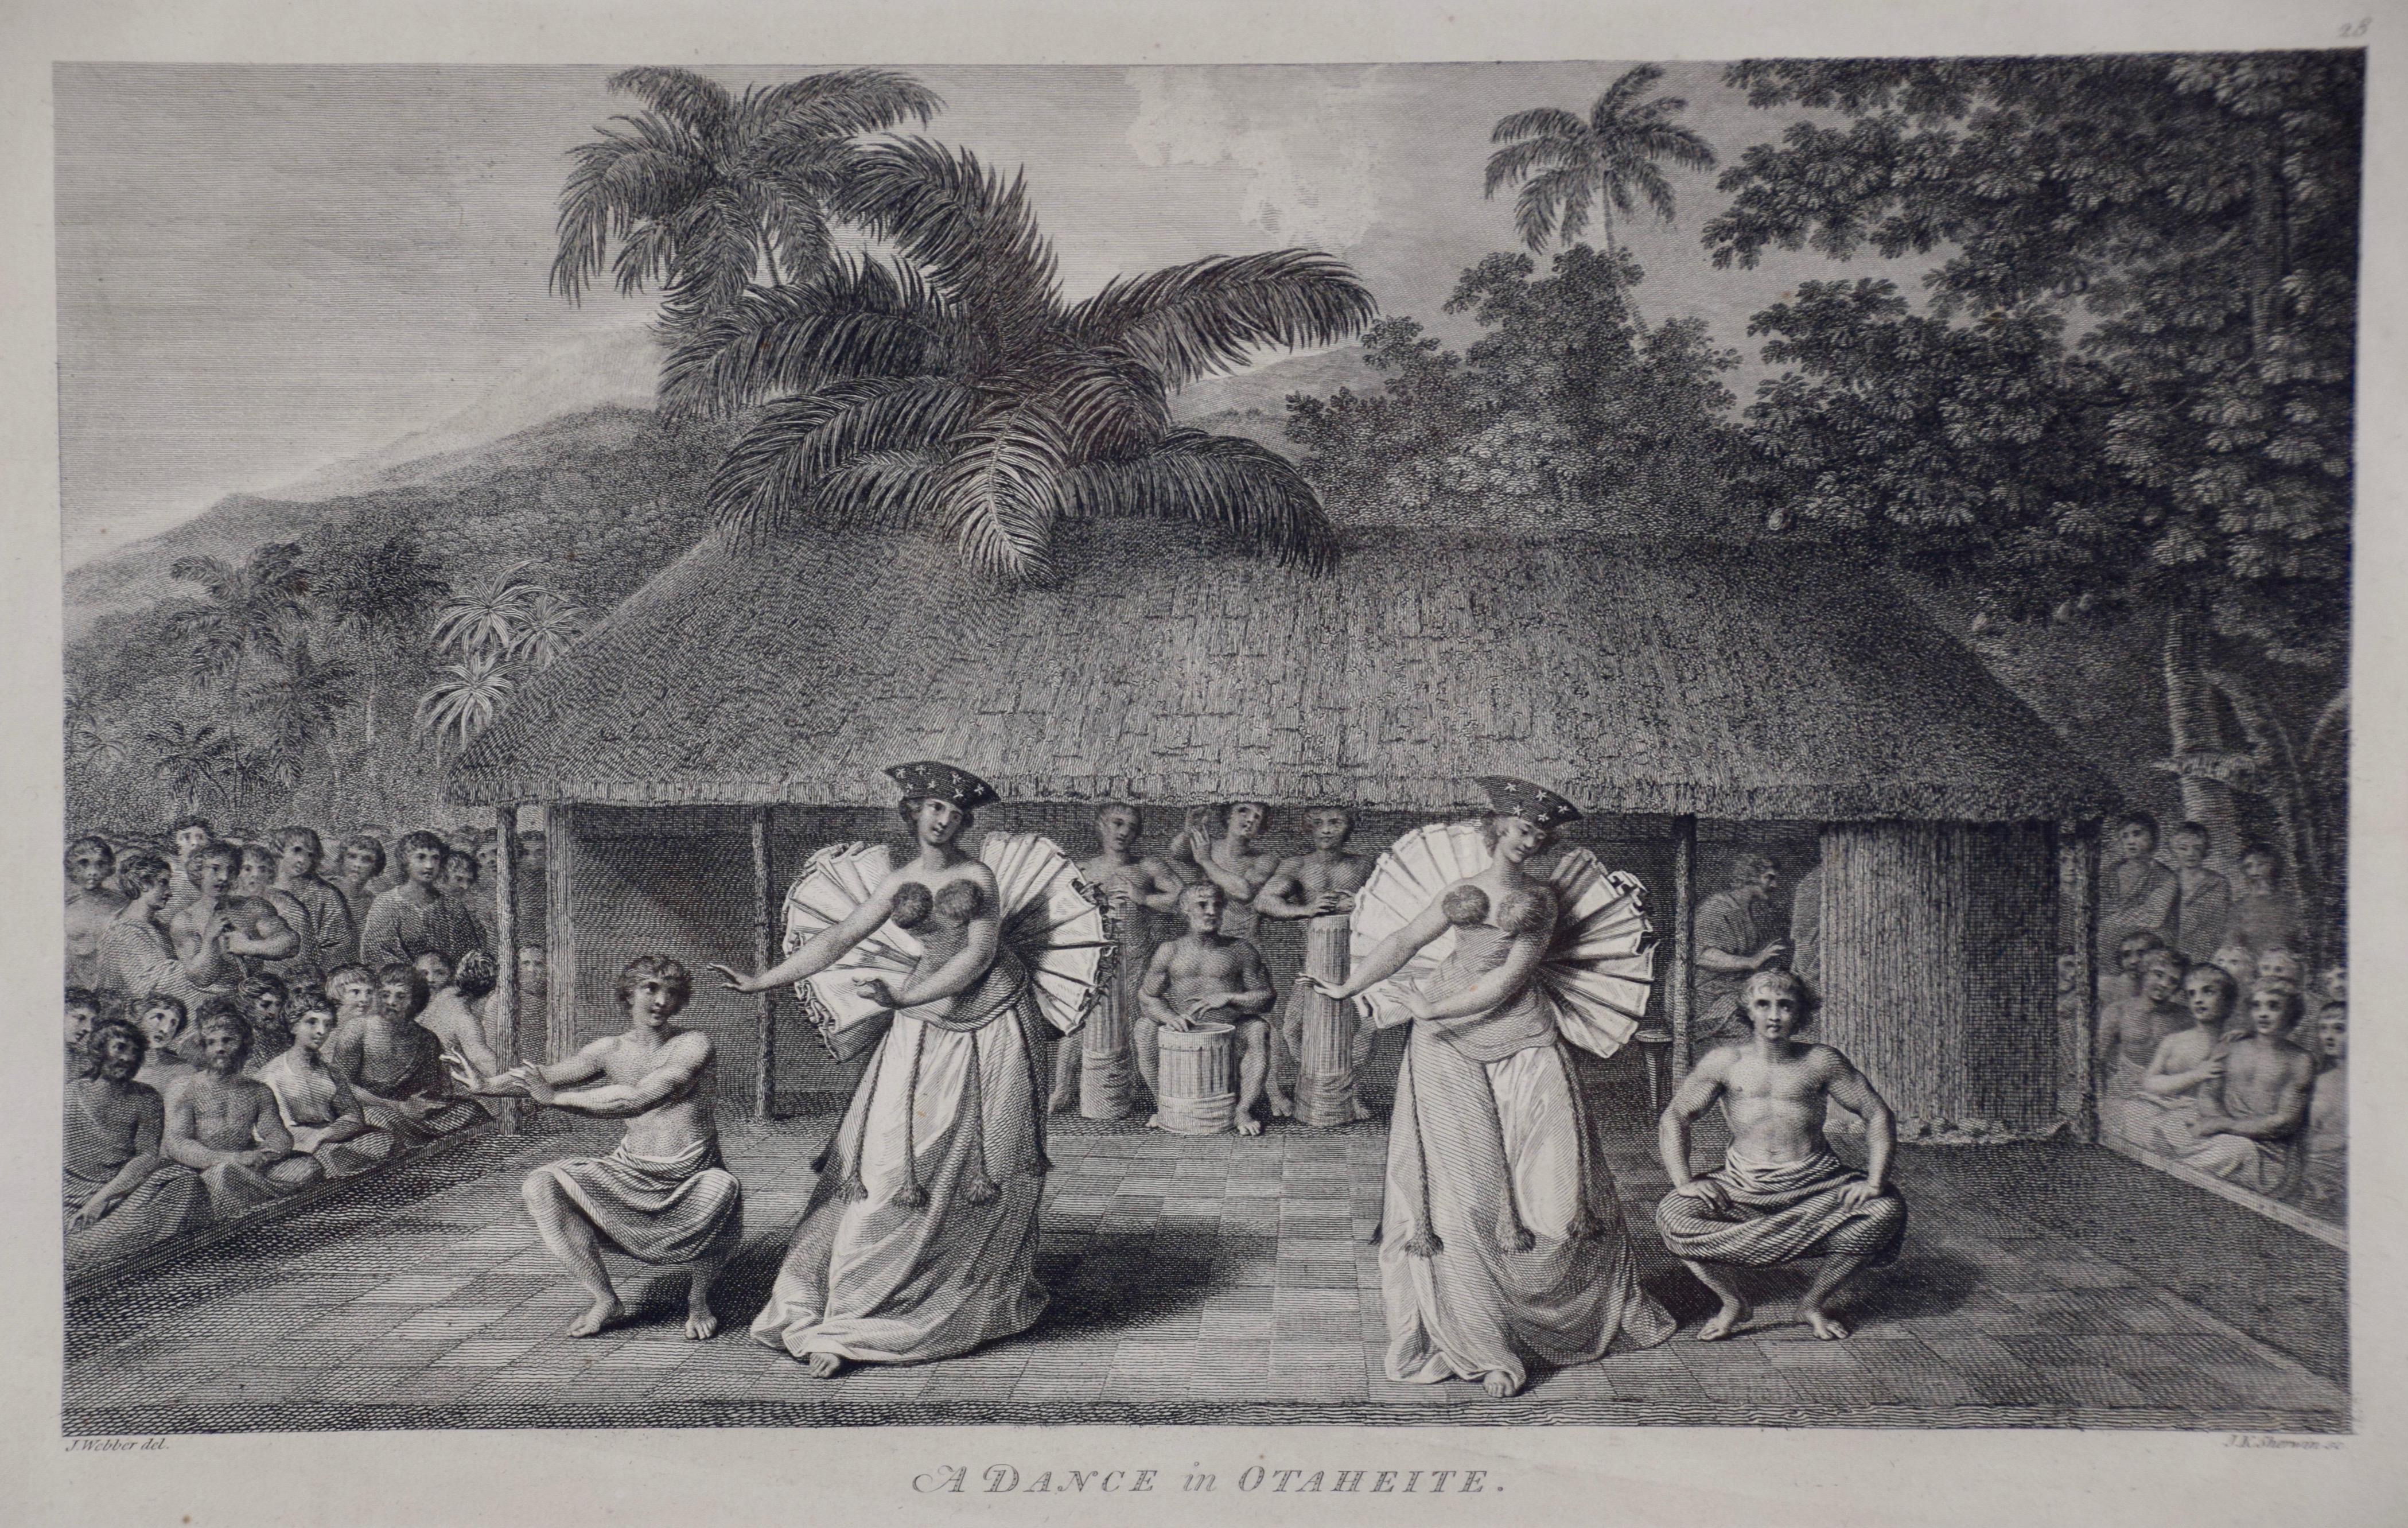 « Une danse à Otaheite » (Tahiti), gravure du troisième voyage du capitaine Cook - Print de John Webber